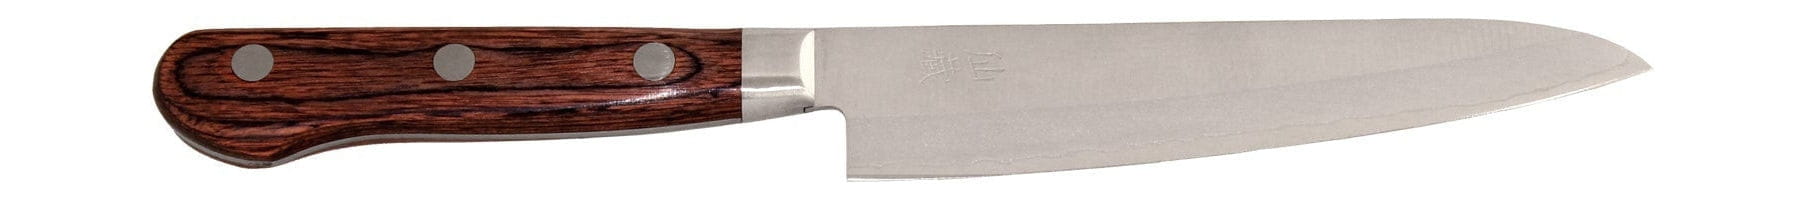 Senzo rivestito come 04 Universal Knife, 13,5 cm